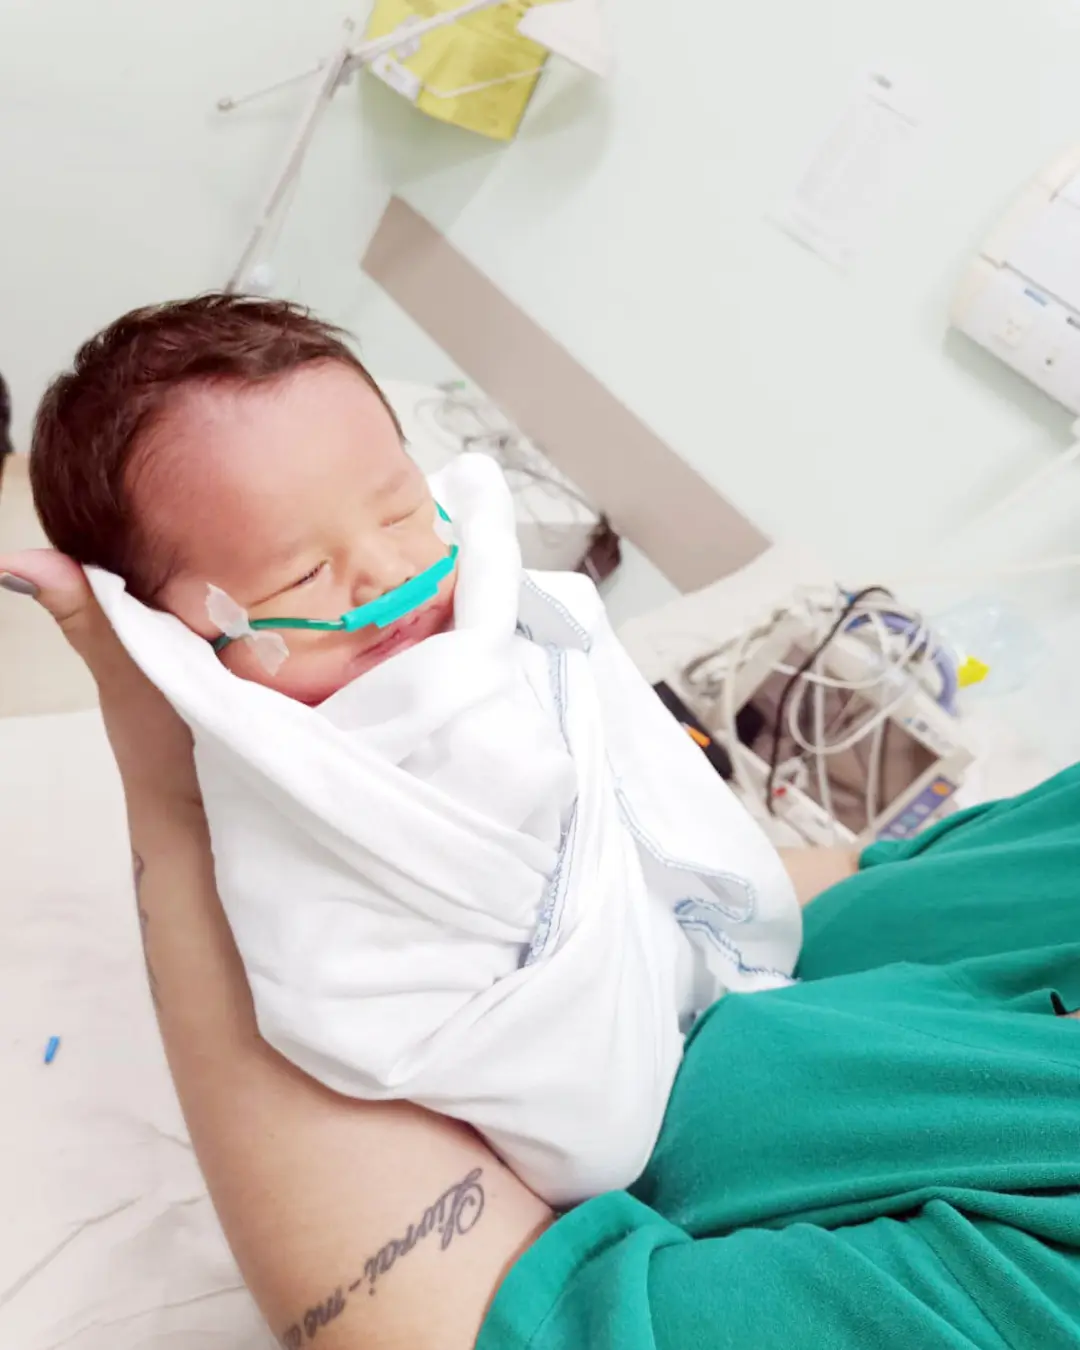 Imagem de destaque - GMs salvam vida de recém-nascido que se engasgou com leite materno